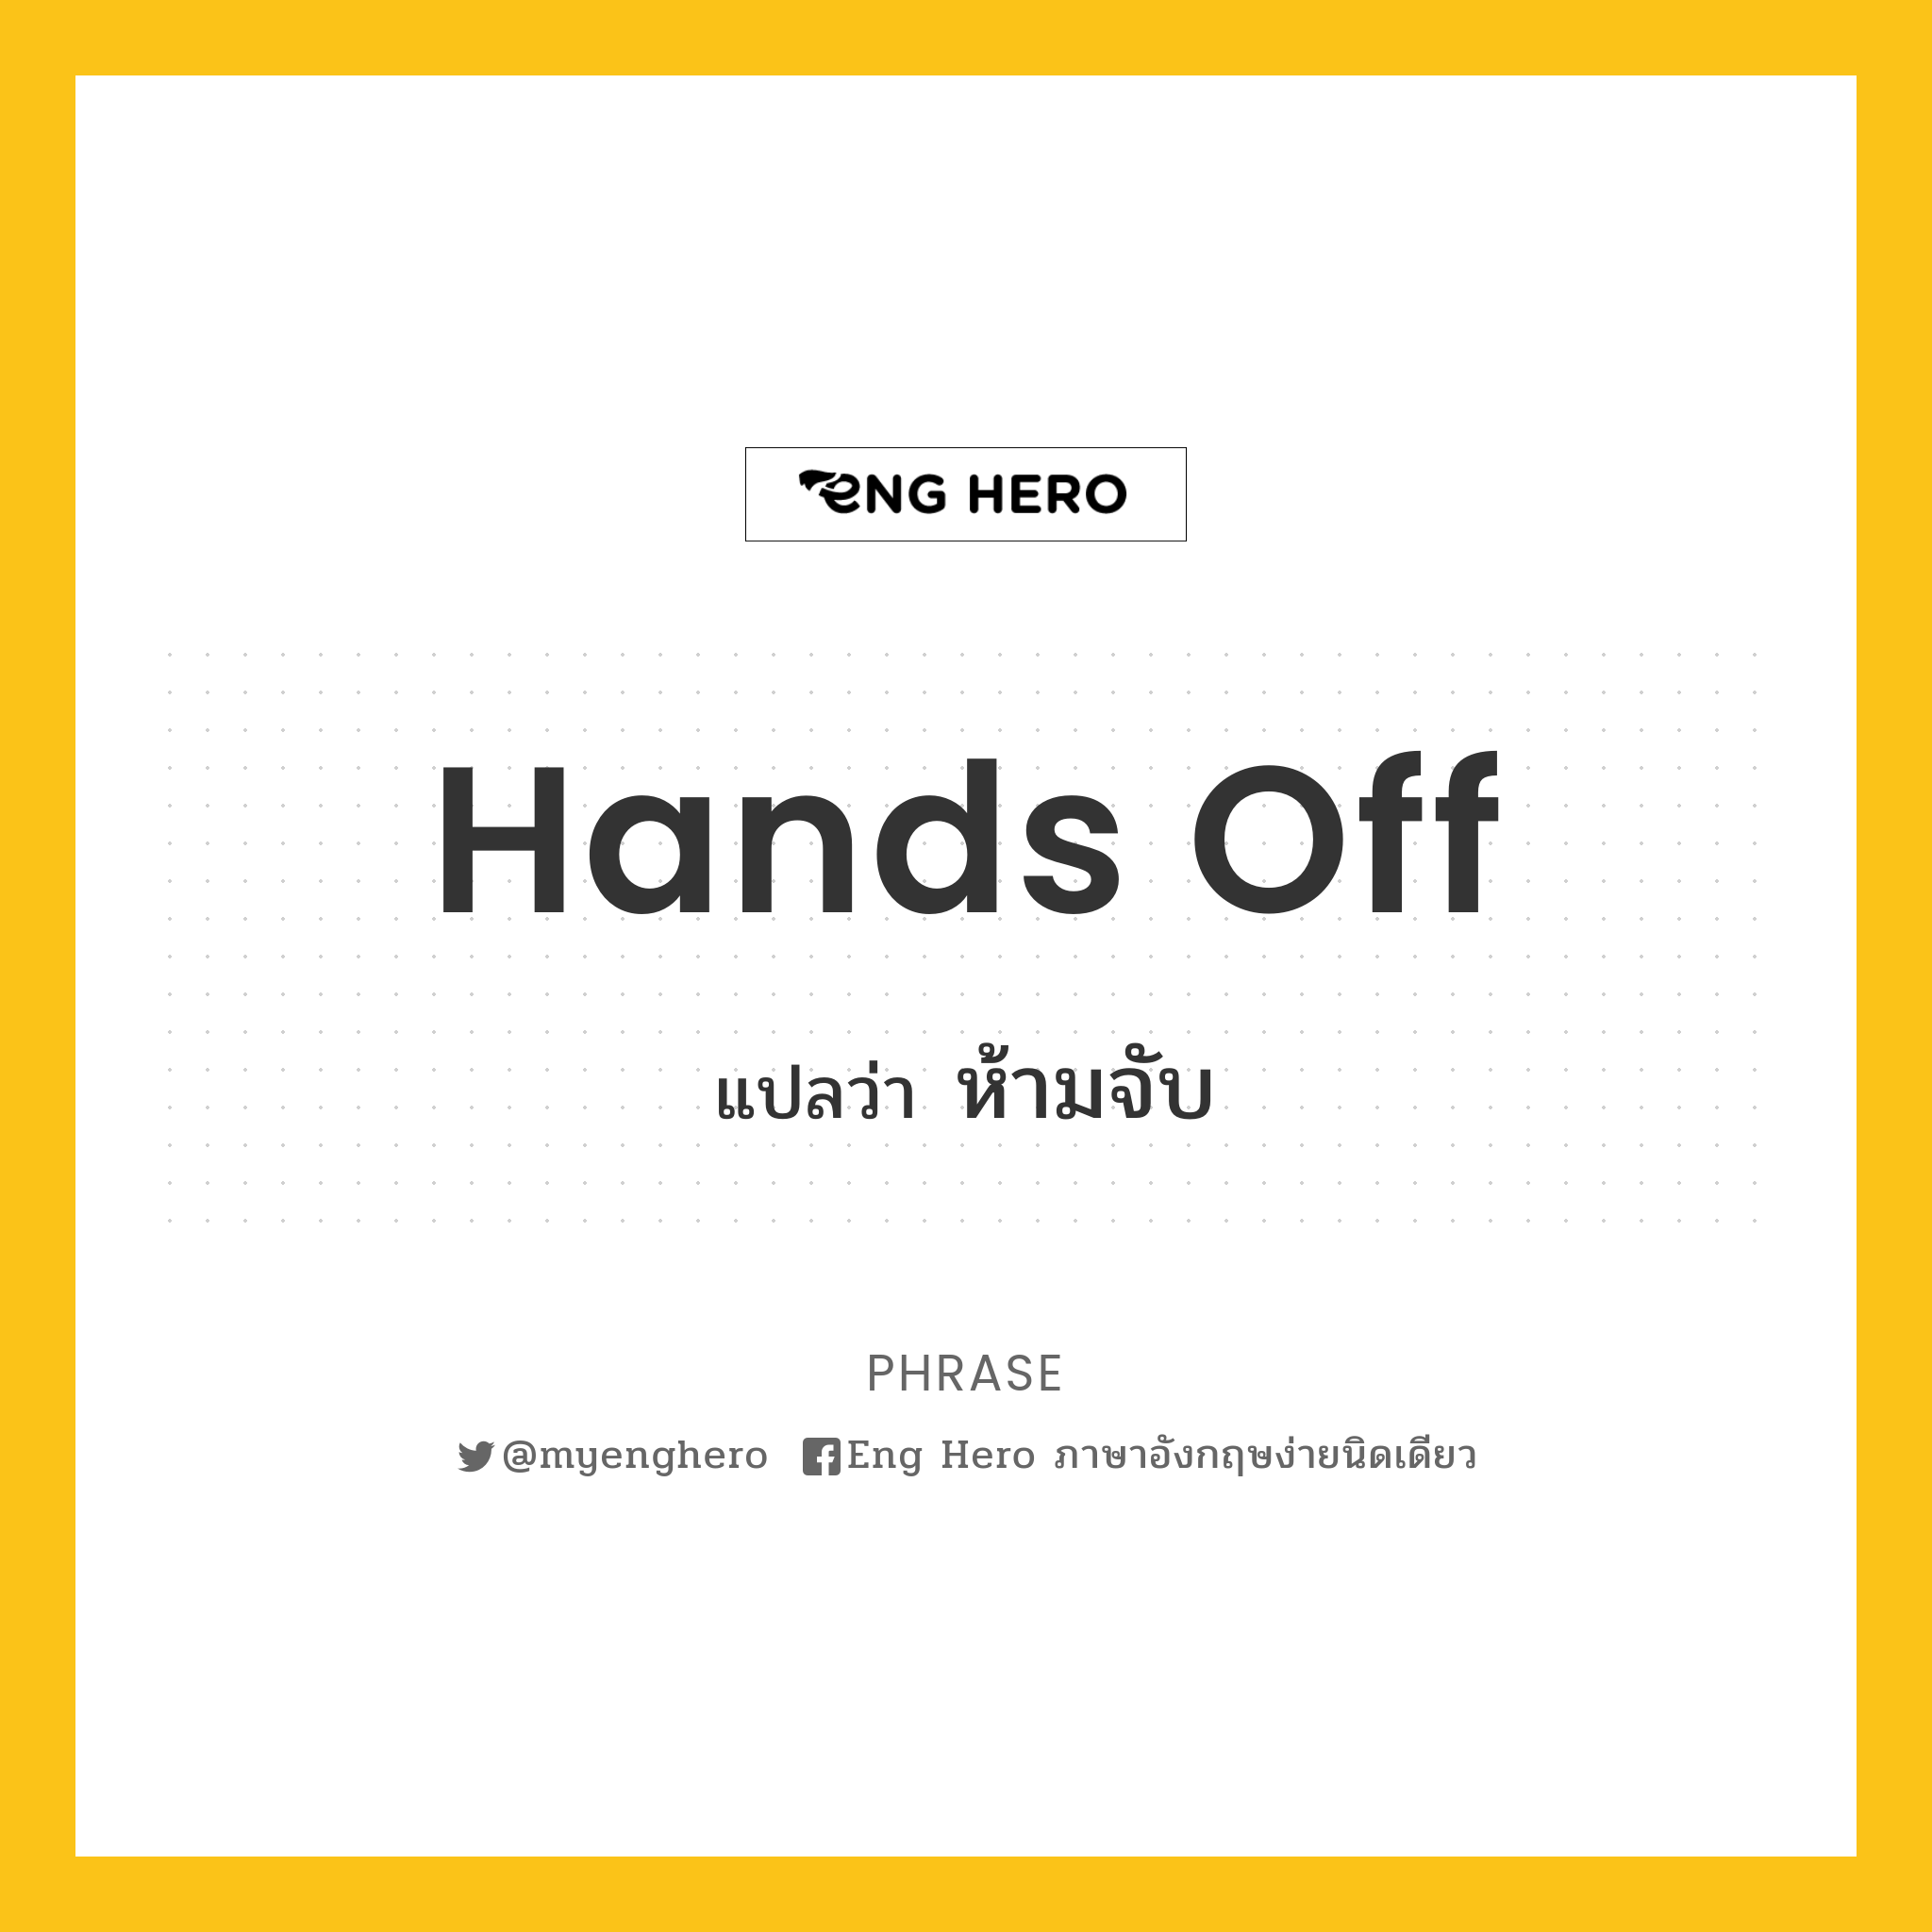 Hands off